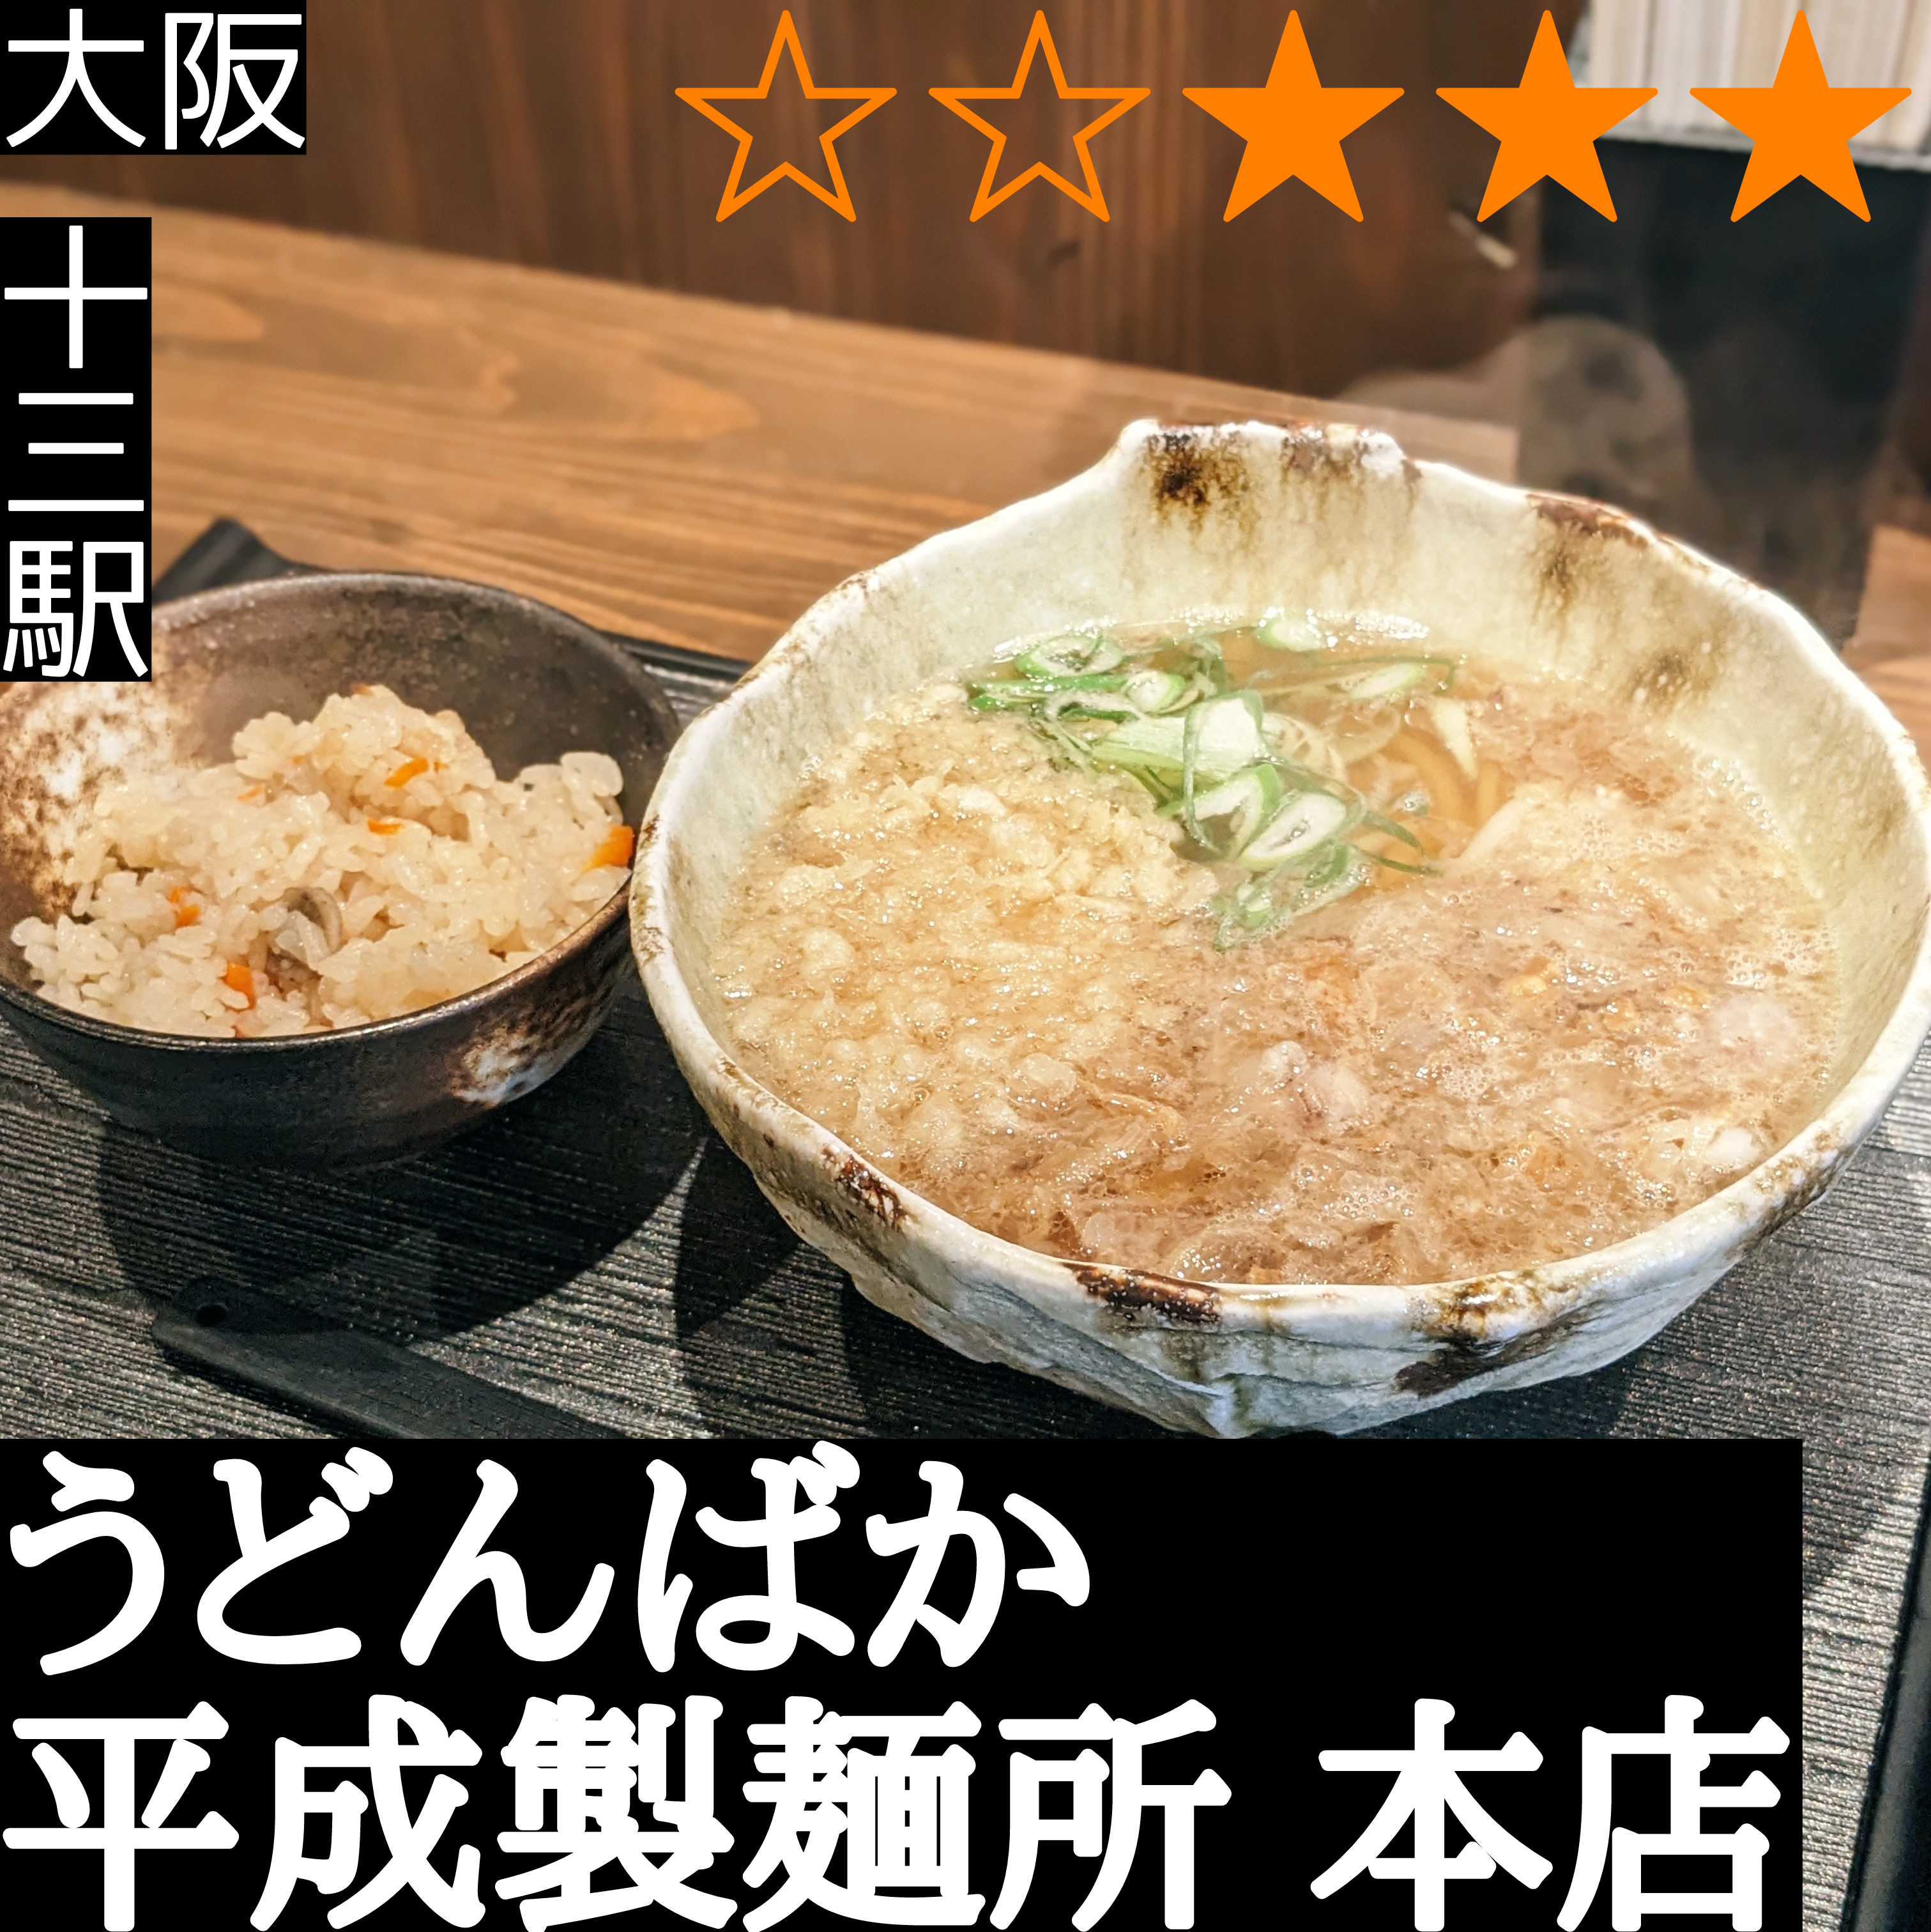 うどんばか 平成製麺所 本店(十三駅・うどん)